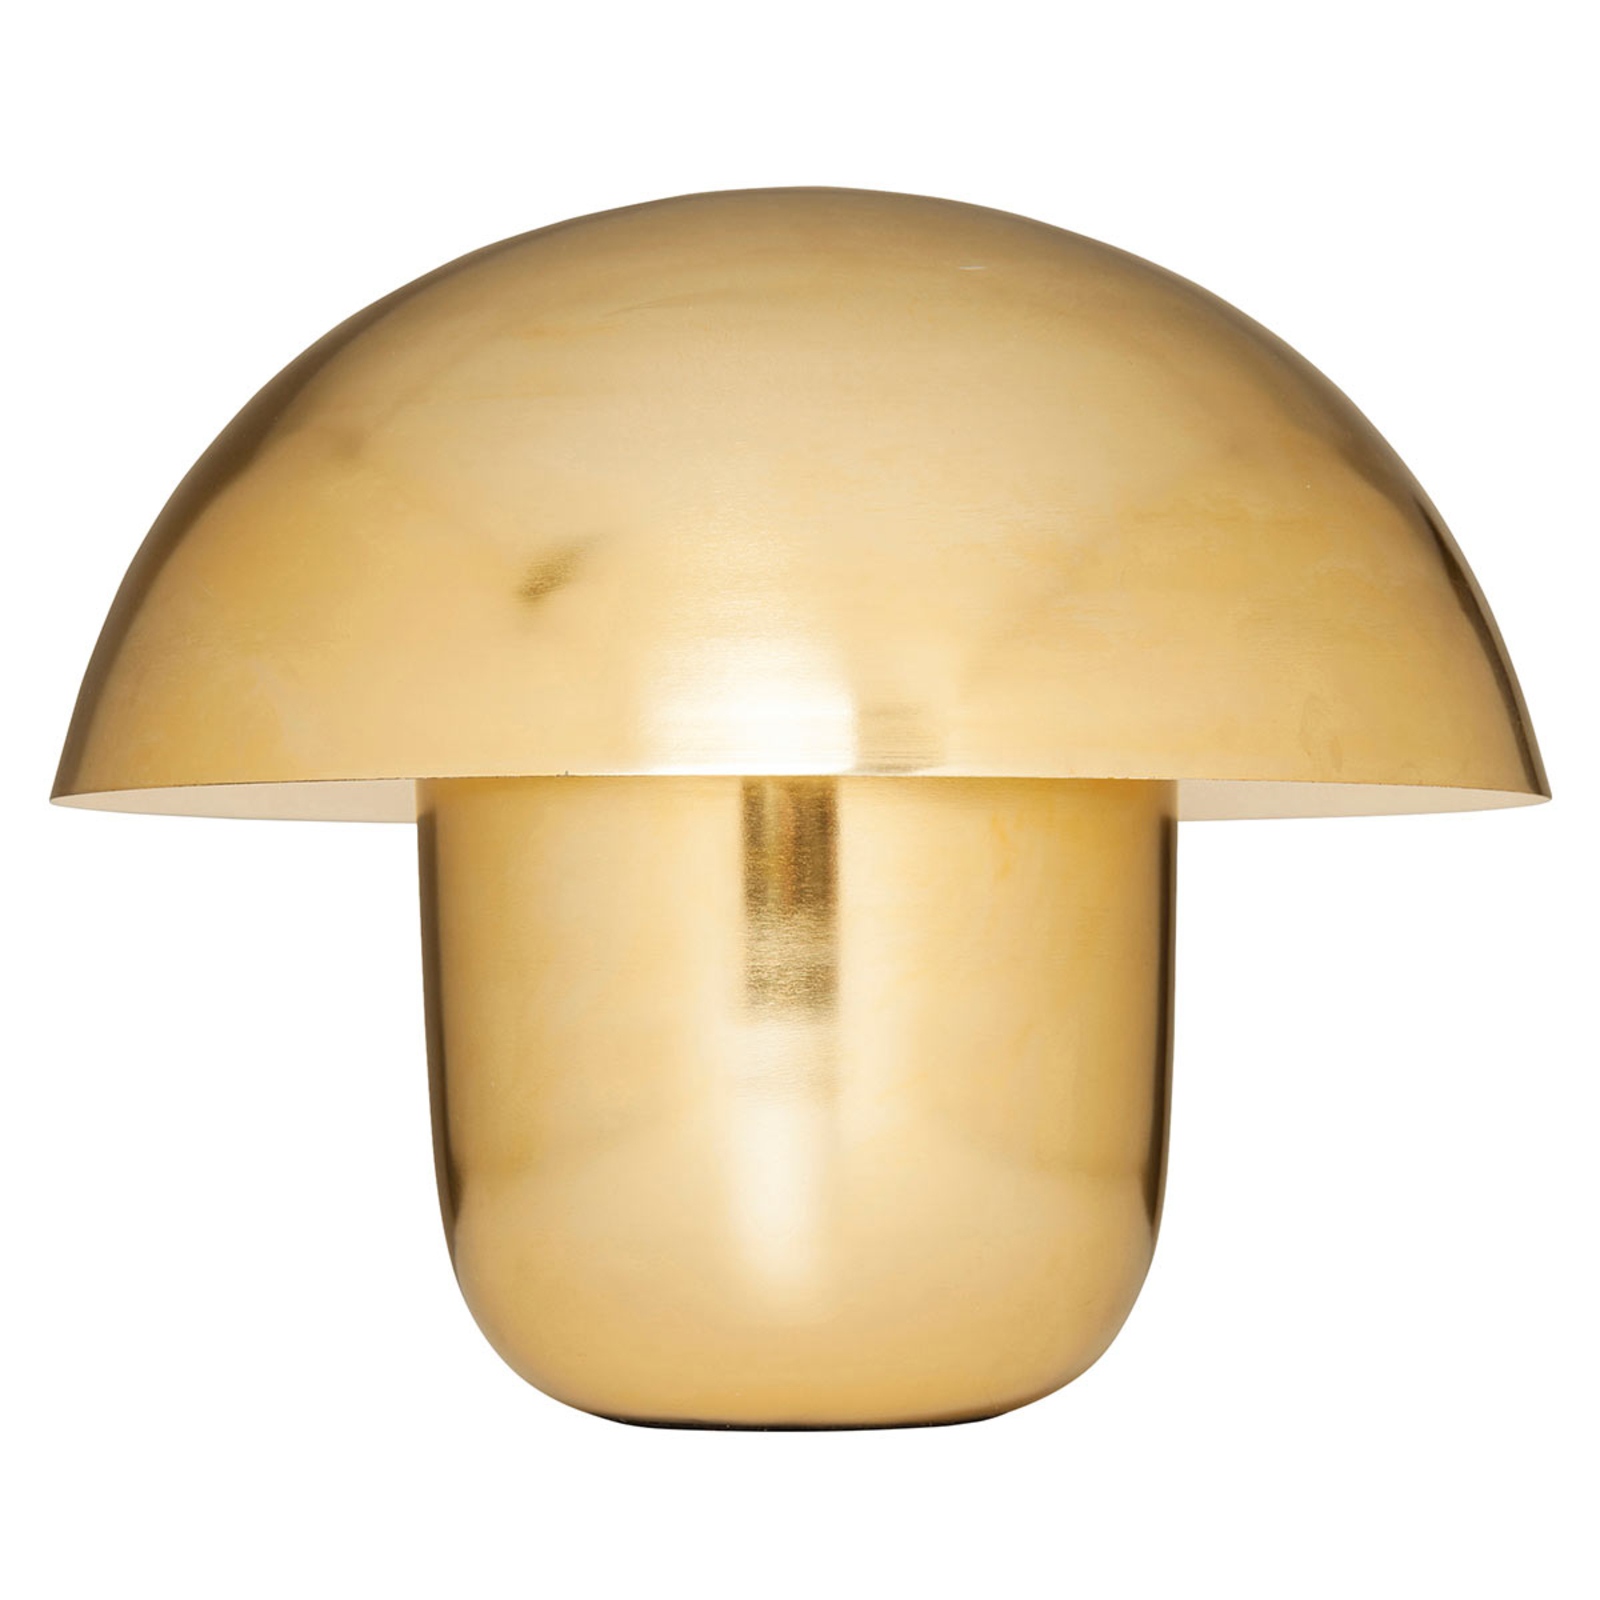 KAREN Mushroom - Lampa stołowa w kształcie grzyba, złota